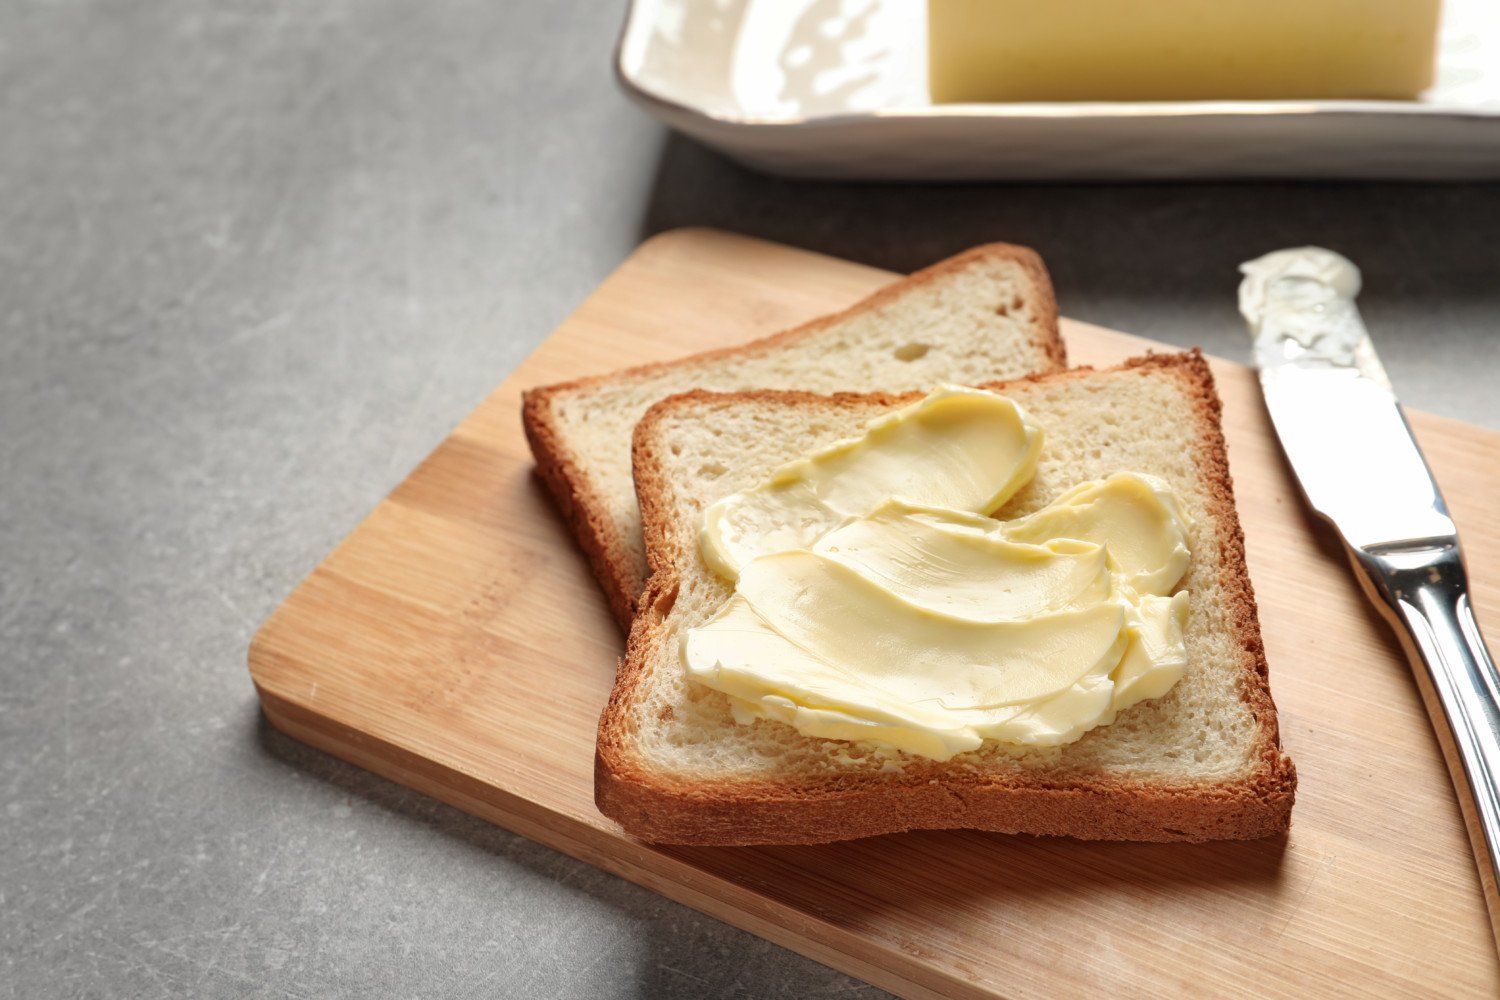 Сливочное масло девочка. Сливочное масло на хлебе. Бутерброды с маслом на завтрак. Бутерброд хлеб с маслом. Сливочное масло на хлебебе.